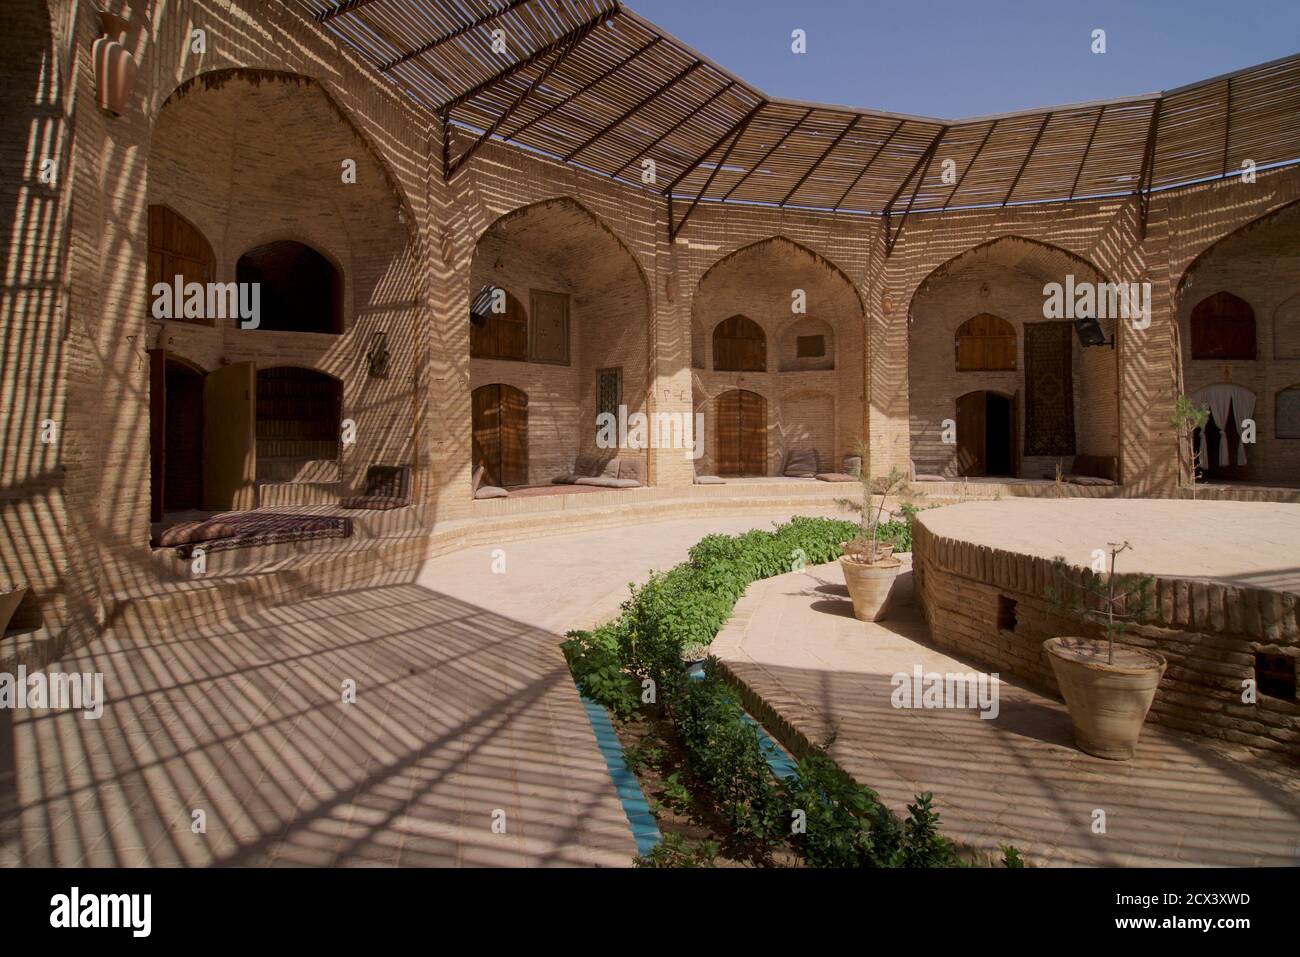 Der Zein-o-DIN Caravanserai befindet sich in Zein-o-din an der Yazd-Kerman Straße, Iran. Die Karawanserei stammt aus dem 16. Jahrhundert und liegt an der alten Seidenstraße. Es ist eines von 999 solcher Gasthäuser, die während der Herrschaft von Schah Abbas I gebaut wurden, um Einrichtungen für Reisende zur Verfügung zu stellen. Von diesen ist Zeinodin eine von zwei Karawansereien mit runden Türmen gebaut. Nach der Renovierung wurde es als Gasthaus betrieben Stockfoto